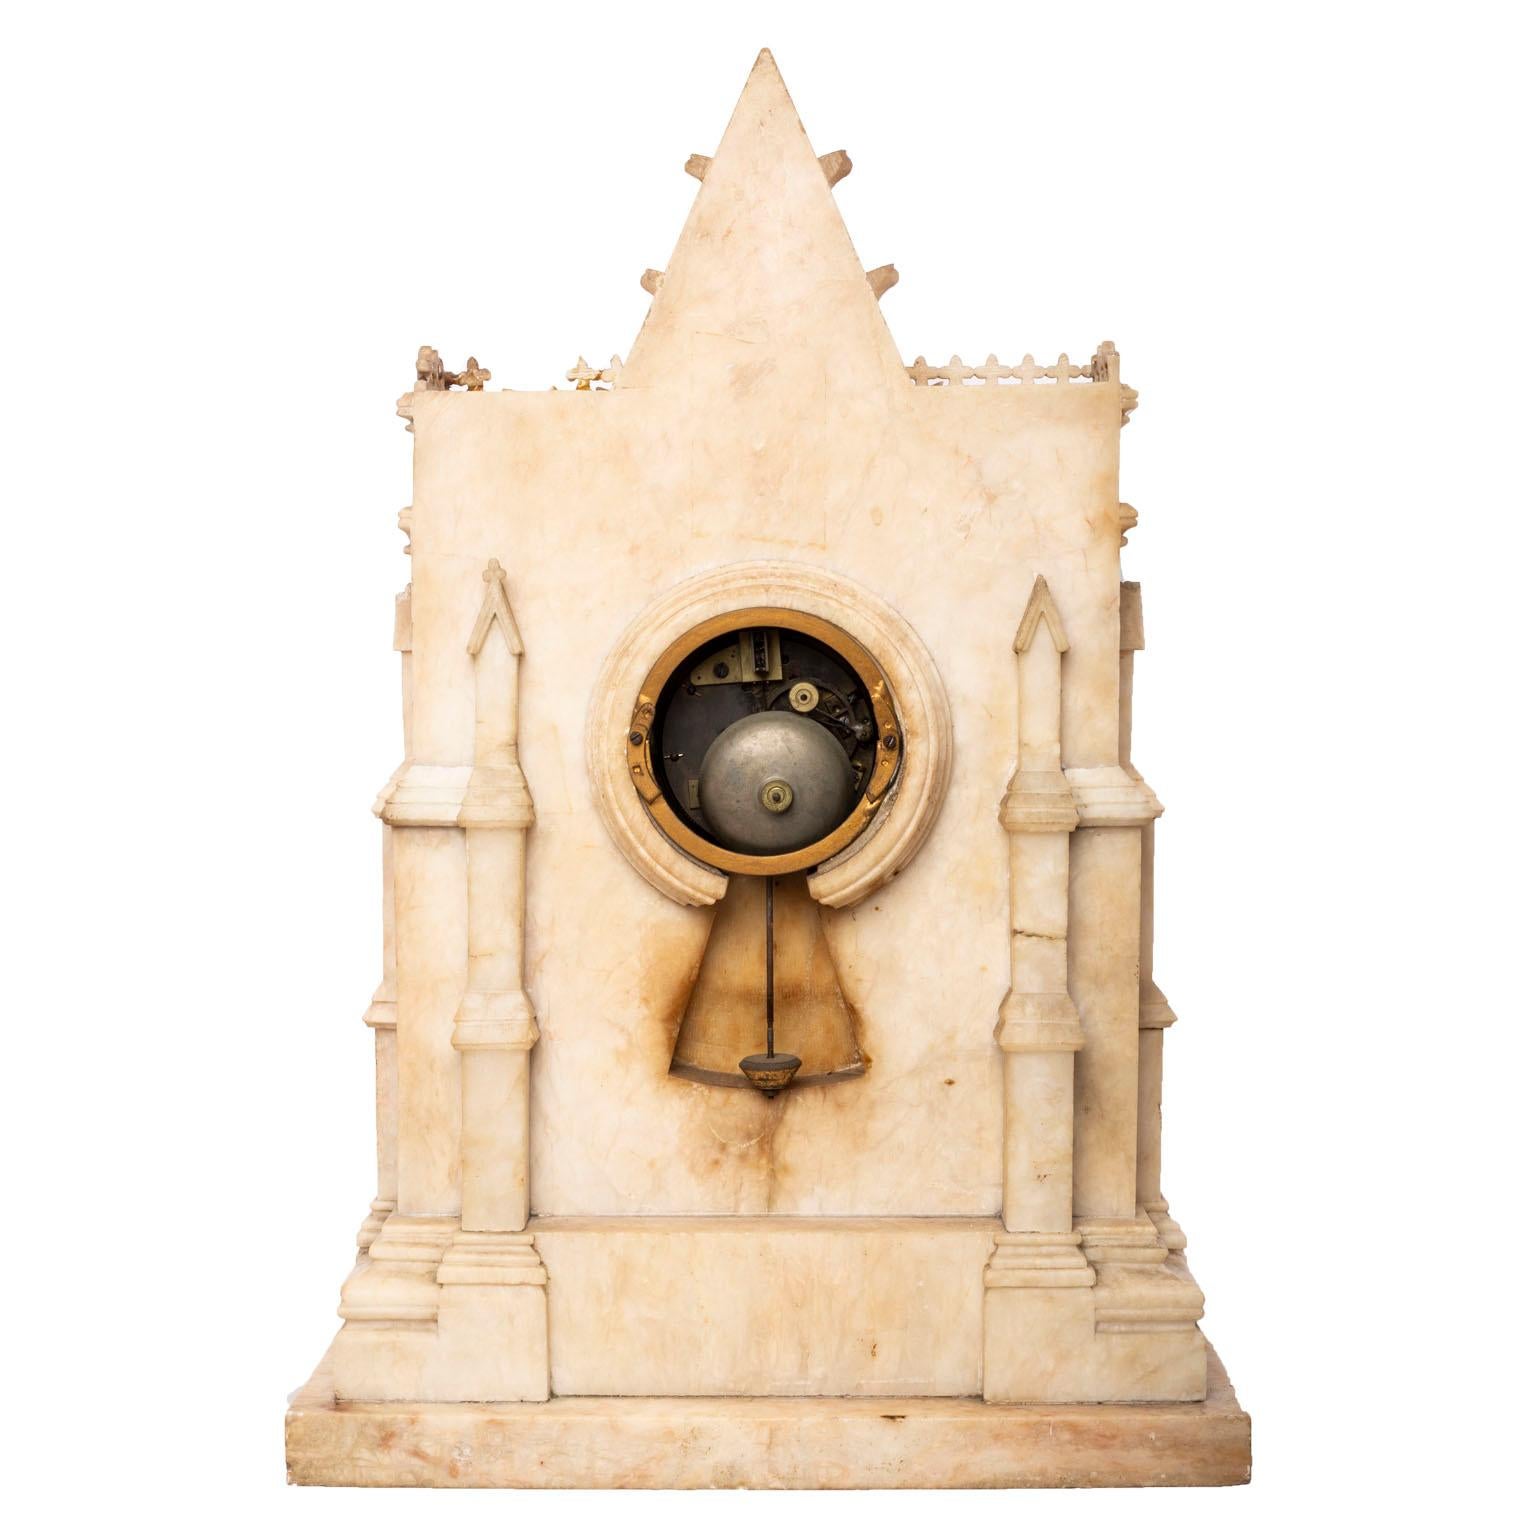 Französische Kaminsimsuhr im gotischen Stil mit Intarsien aus Marmor.
Zifferblatt signiert H. Azur à Paris. Höhe 21 Zoll, Breite 14 1/4 Zoll.